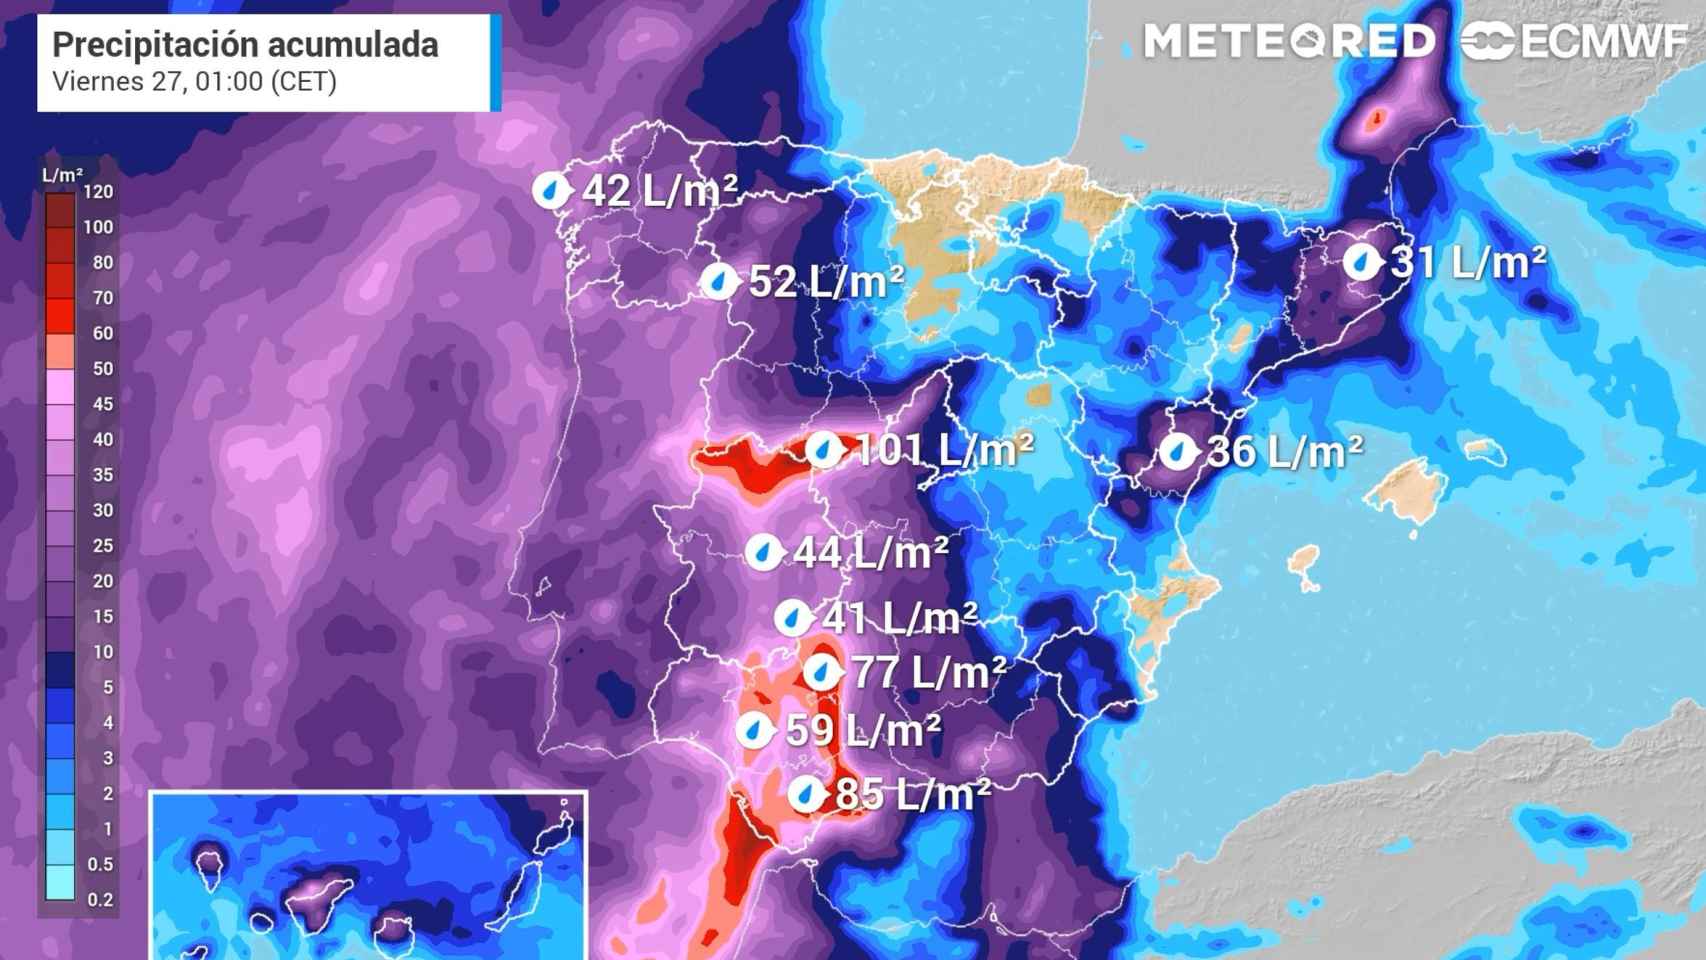 Lluvias previstas hasta la noche del jueves, con acumulados importantes en el centro y suroeste peninsular. Meteored.